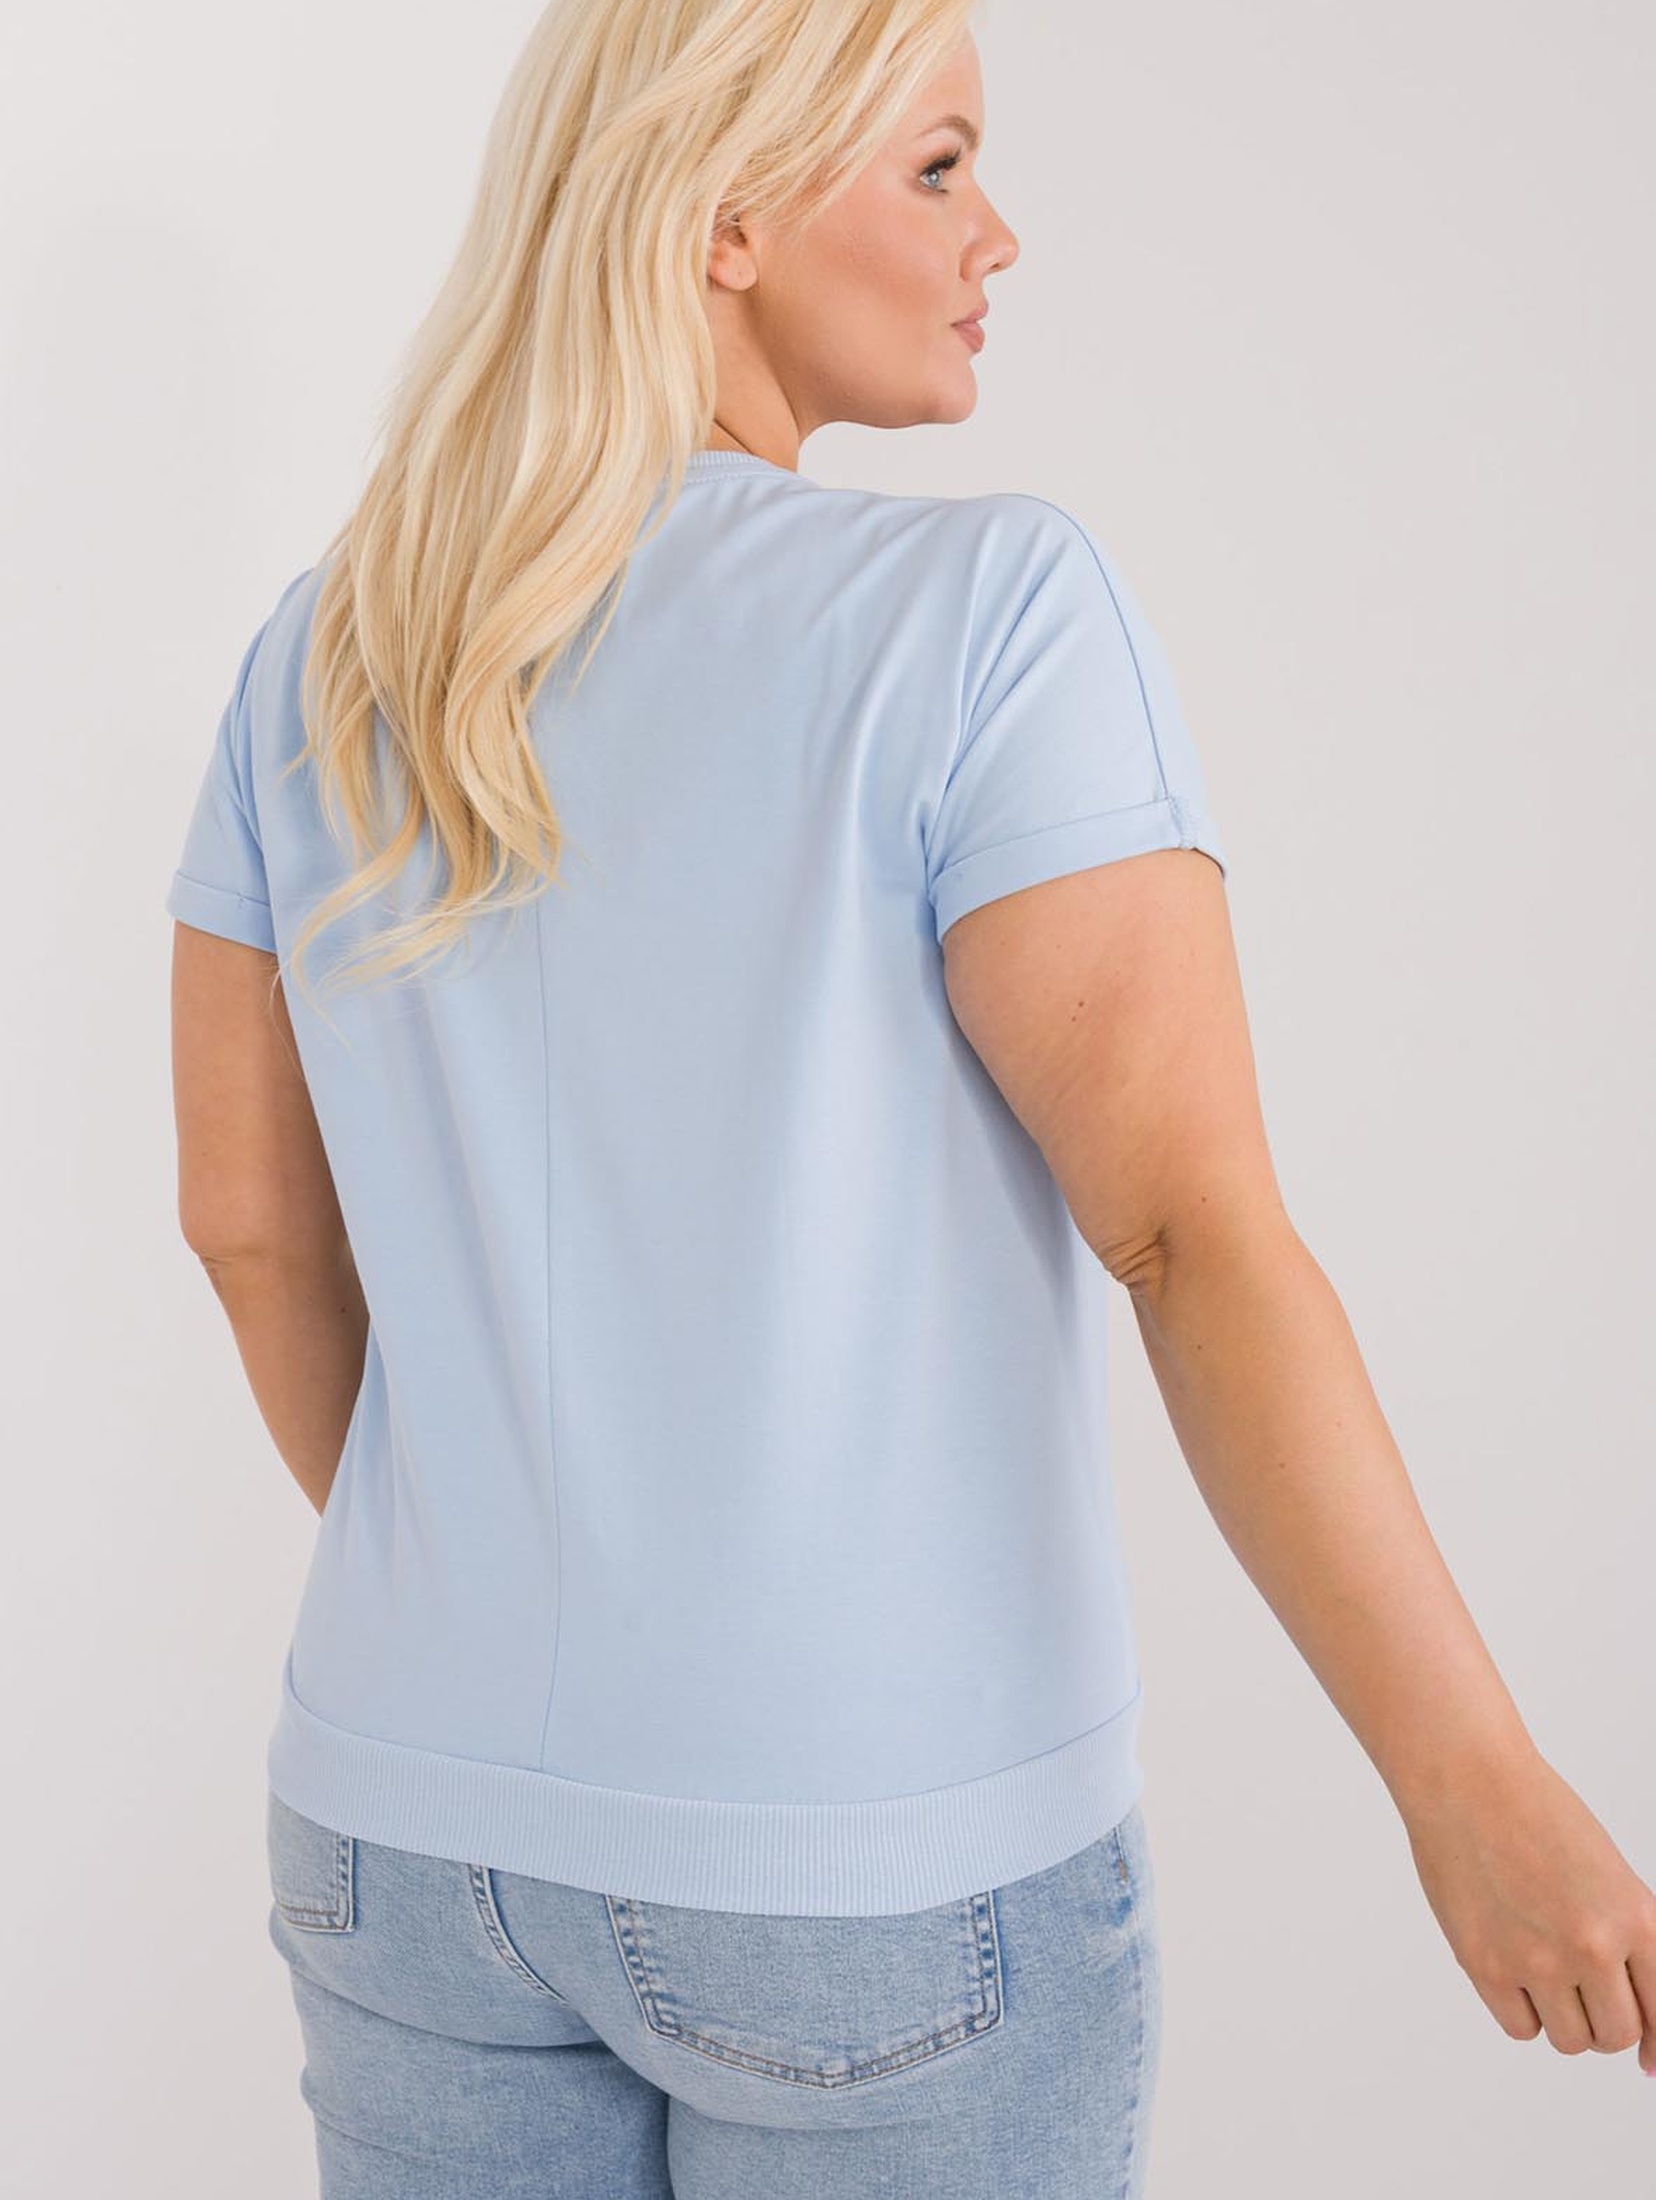 Bluzka plus size z krótkim rękawem jasno niebieska